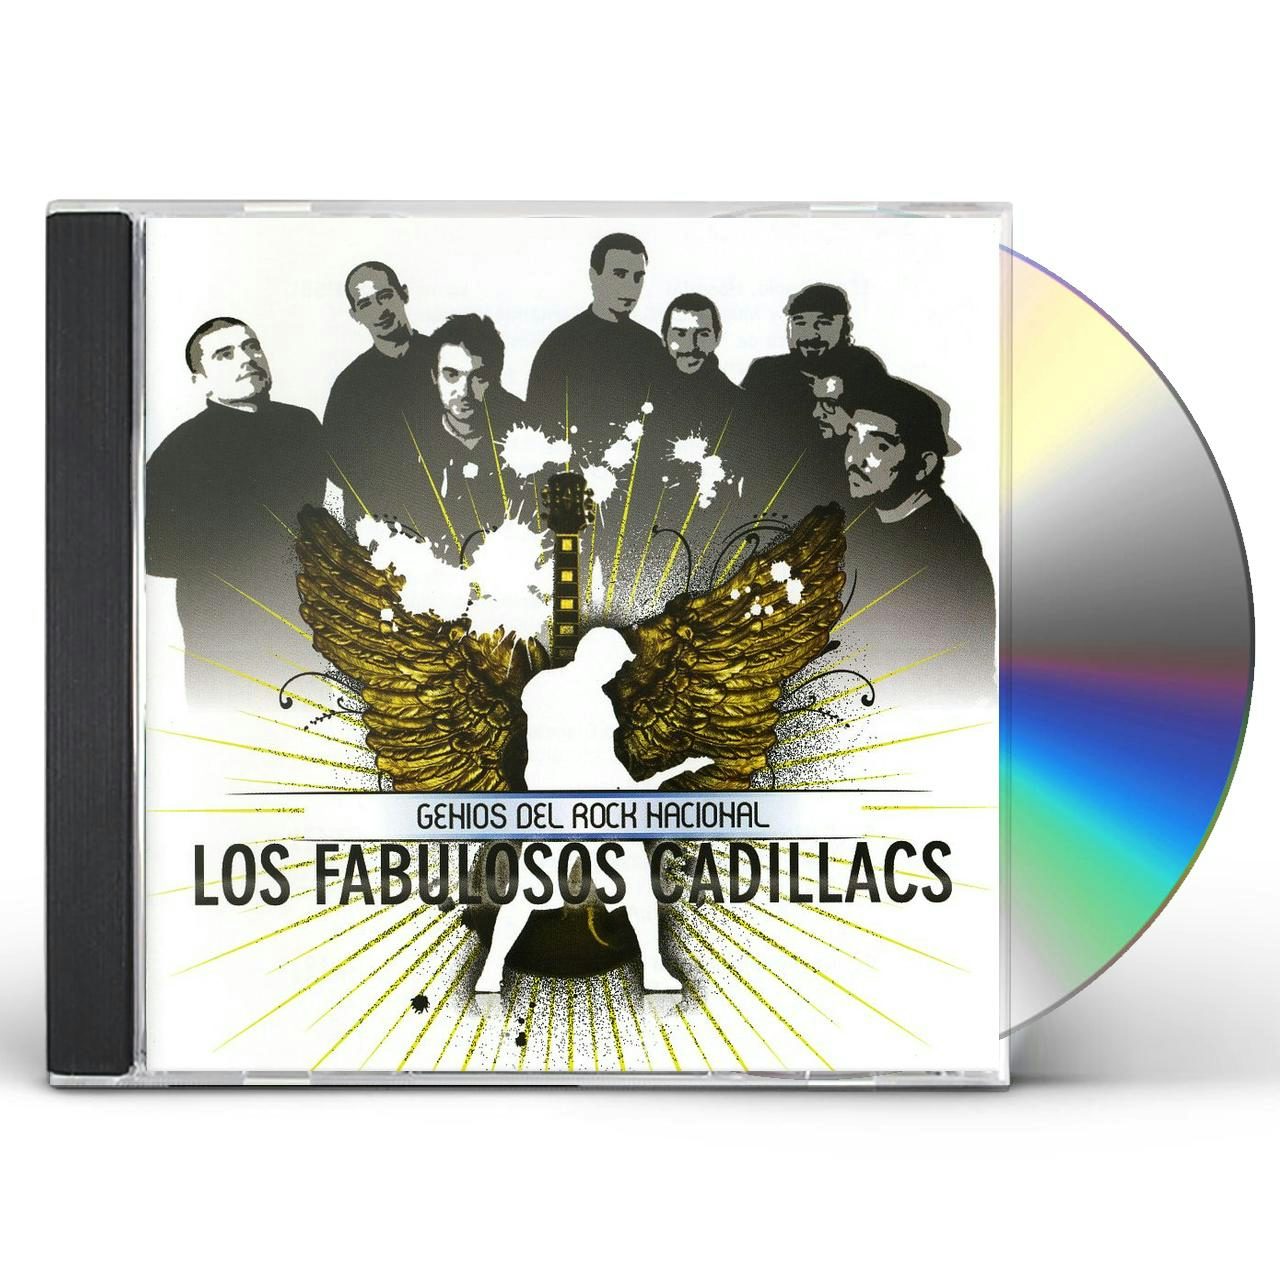 名曲揃いの人気アルバムのALP Los Fabulosos Cadillacs/El neo ska